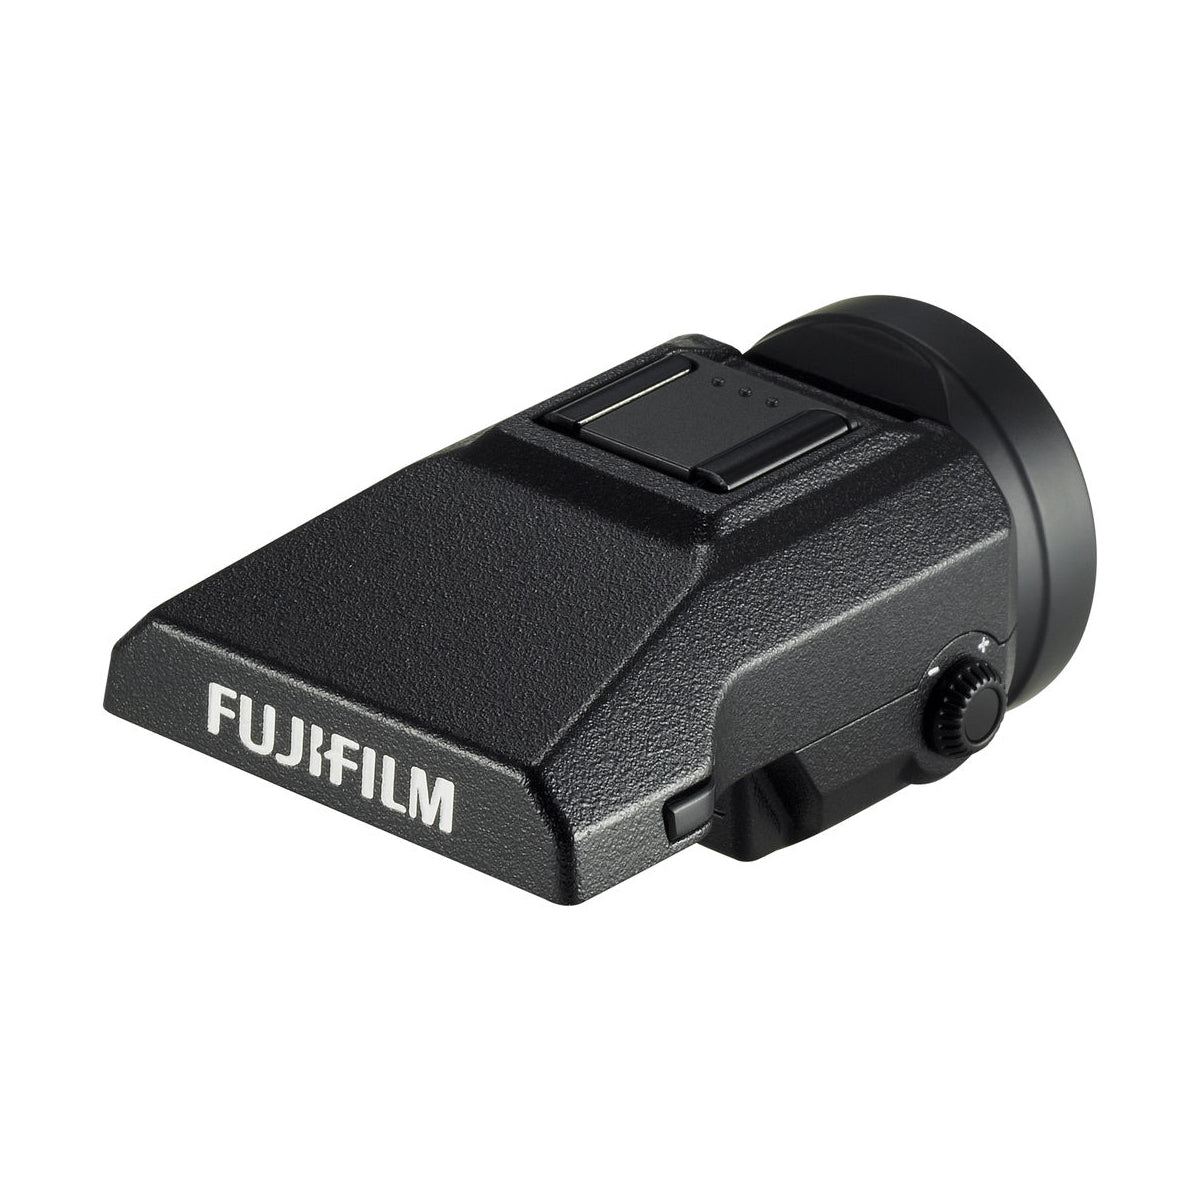 Fujifilm GFX 50S Medium Format Camera Body